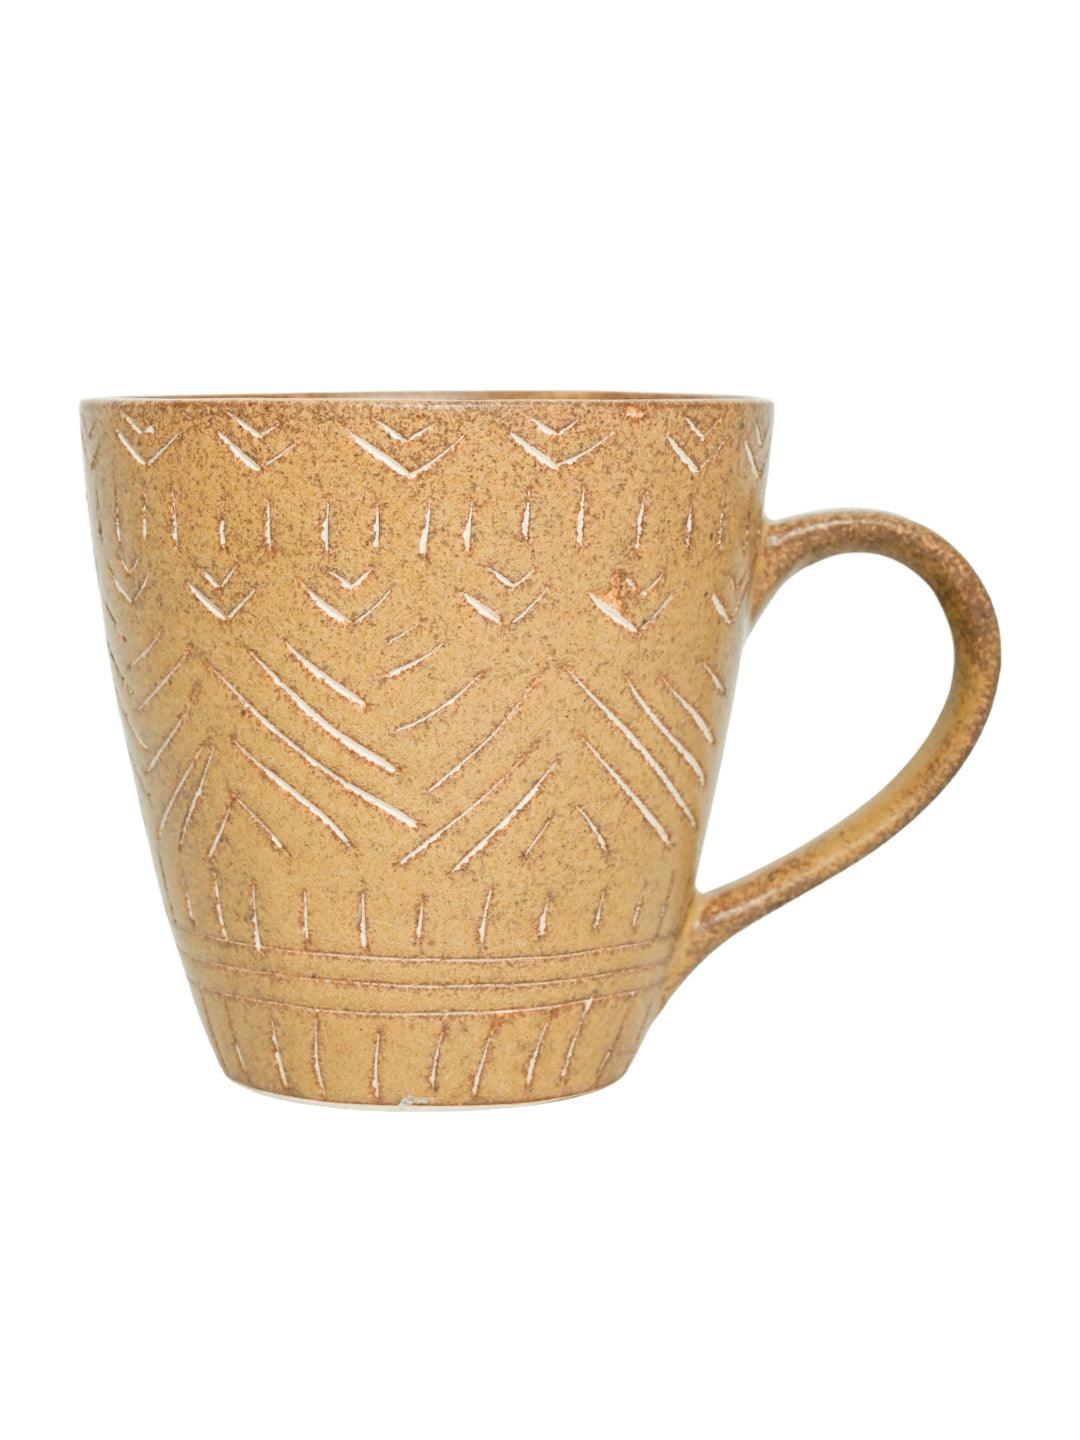 VON CASA Ceramic Coffee Mug - 320 Ml, Beige & Engrabed - MARKET 99